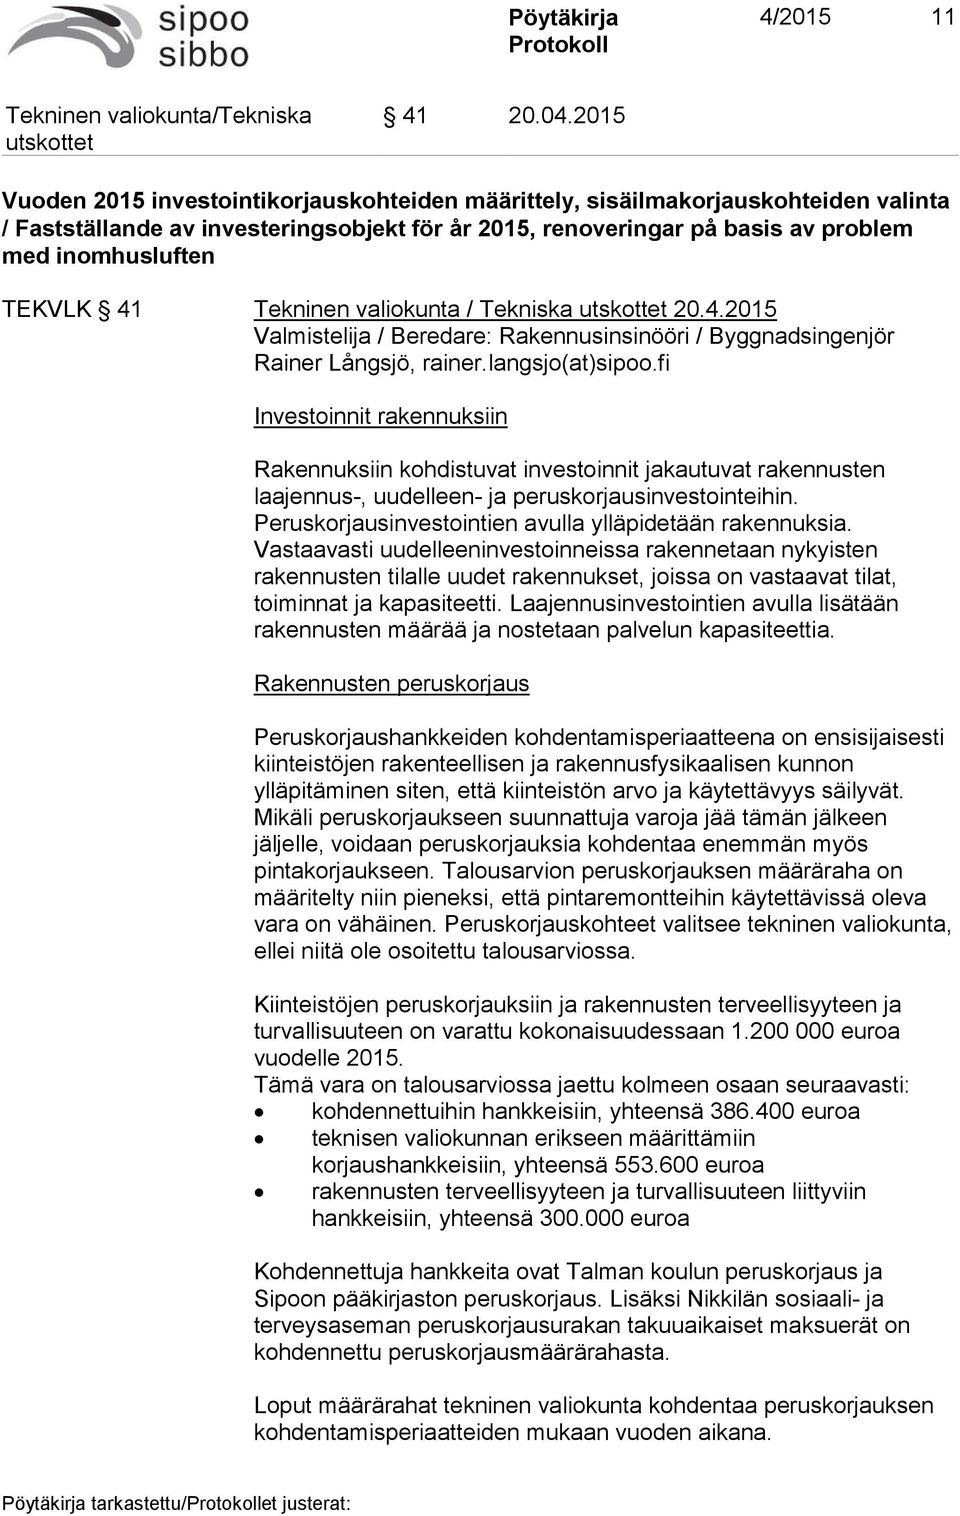 41 Tekninen valiokunta / Tekniska 20.4.2015 Valmistelija / Beredare: Rakennusinsinööri / Byggnadsingenjör Rainer Långsjö, rainer.langsjo(at)sipoo.